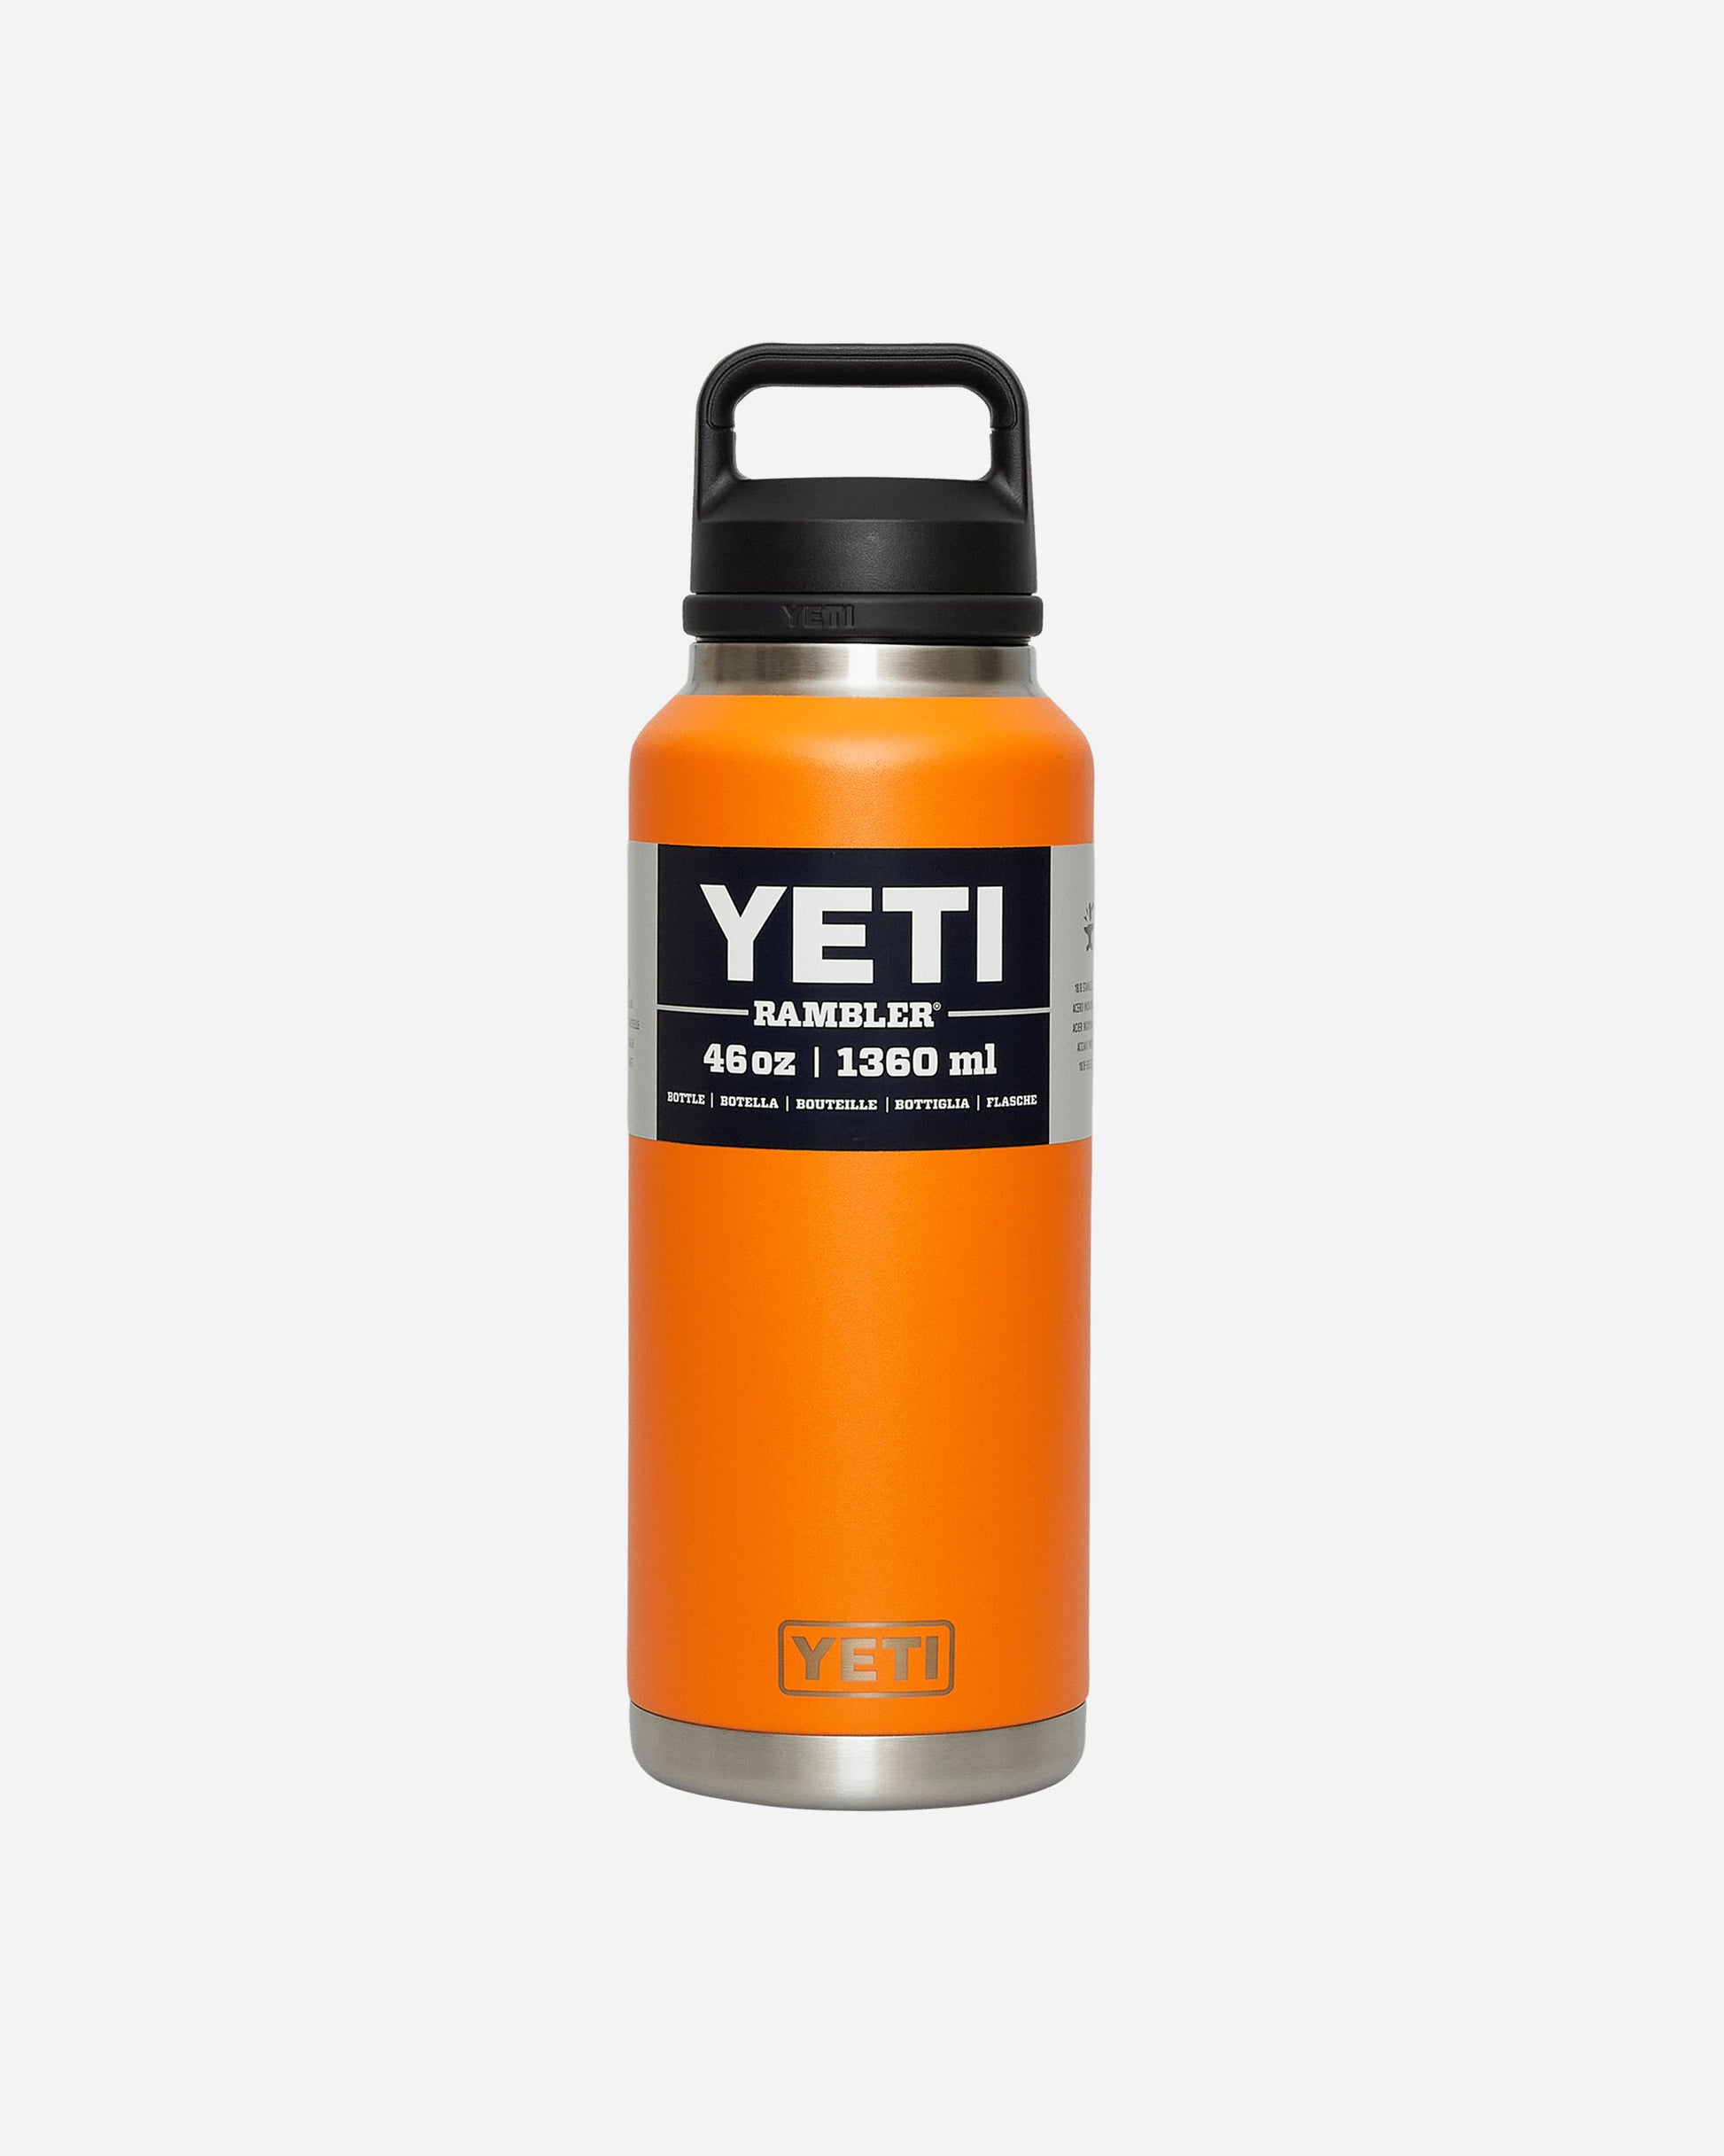 YETI Rambler 46 Oz Bottle Chug King Crab Orange Equipment Bottles and Bowls 0316 KCO